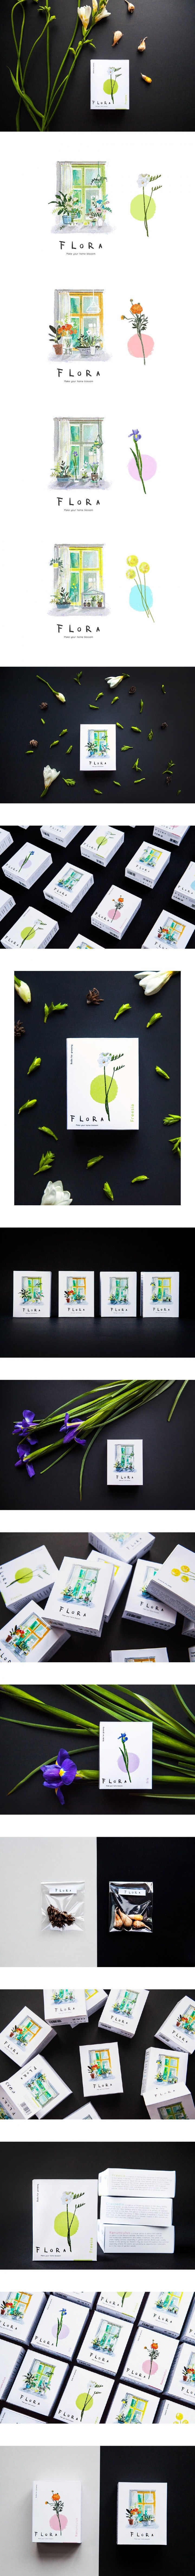 Flora品牌包装设计